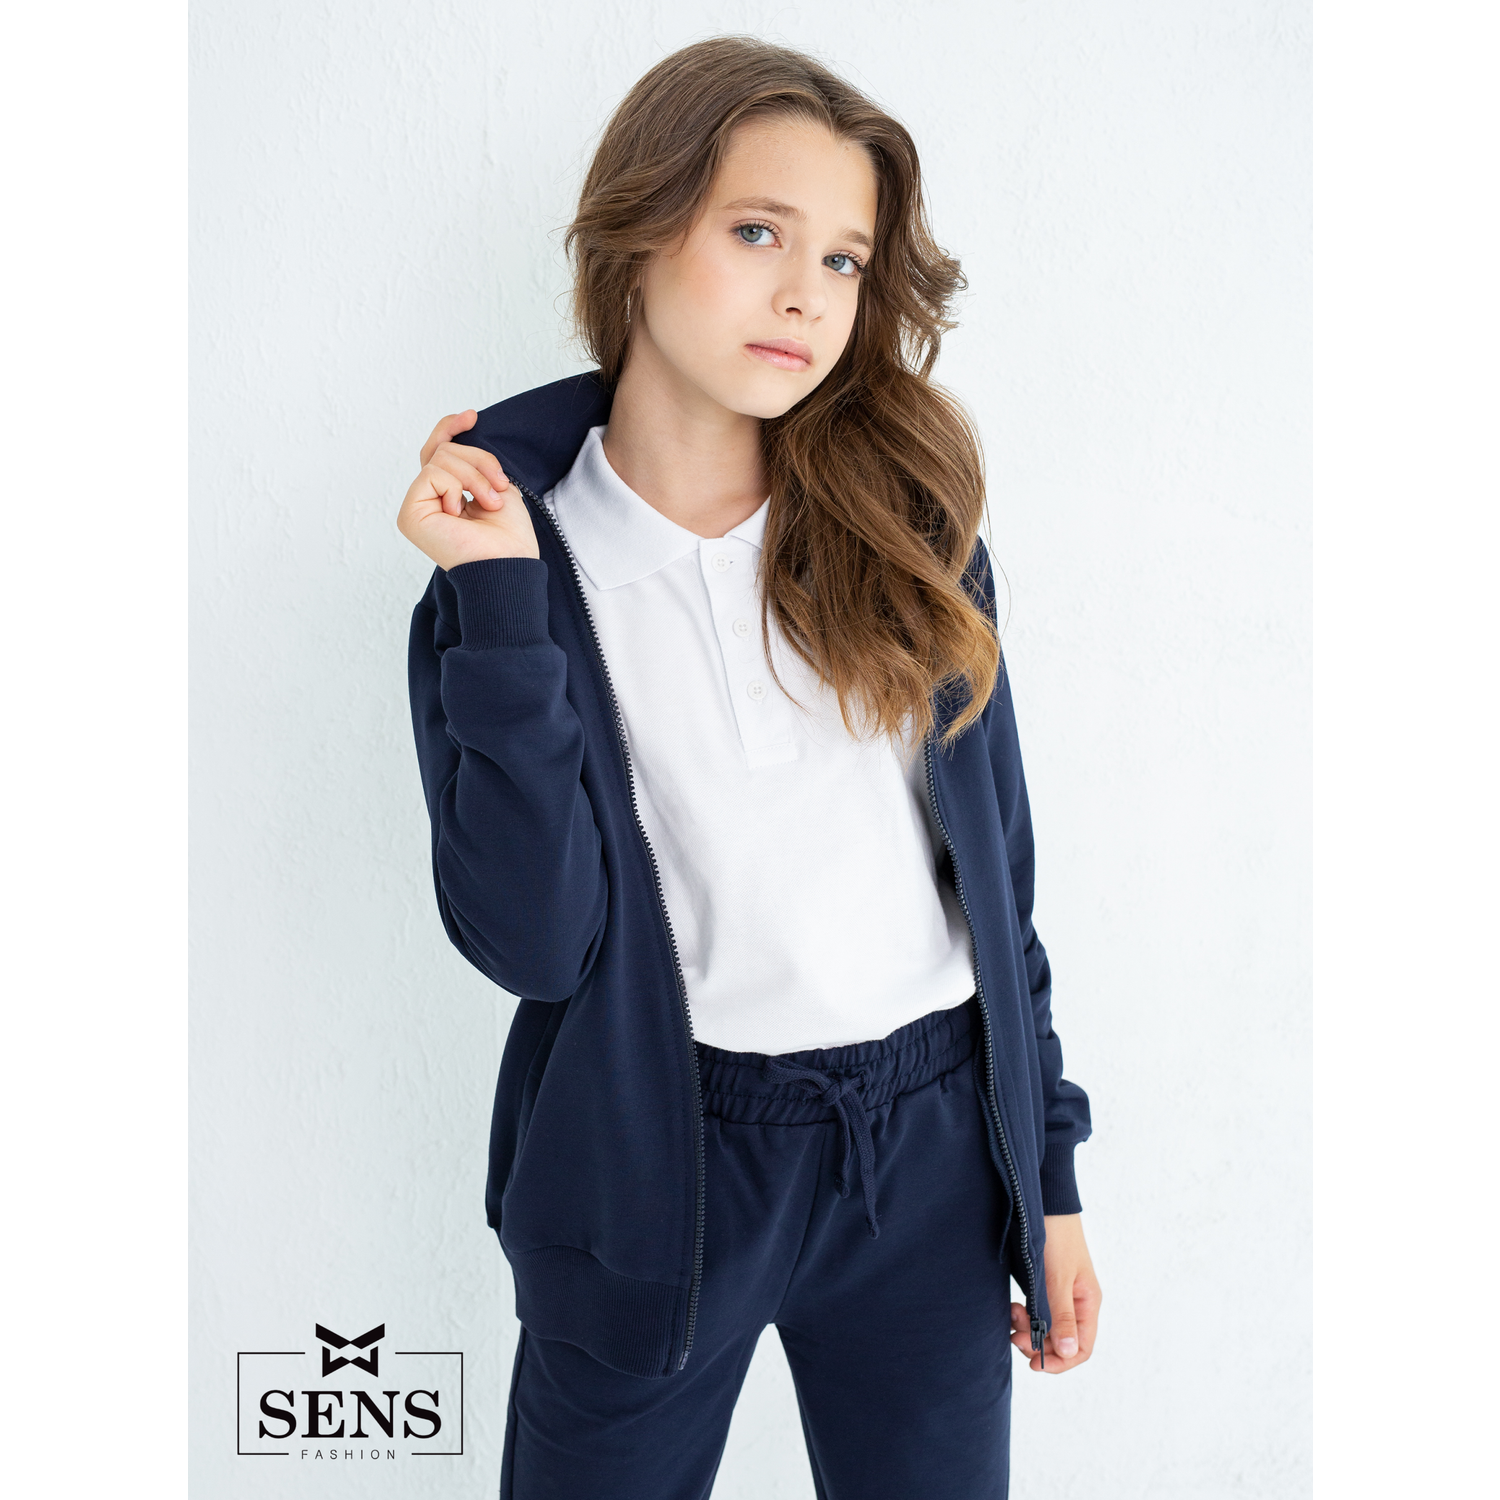 Спортивный костюм Sens Fashion СК/т.синий - фото 18